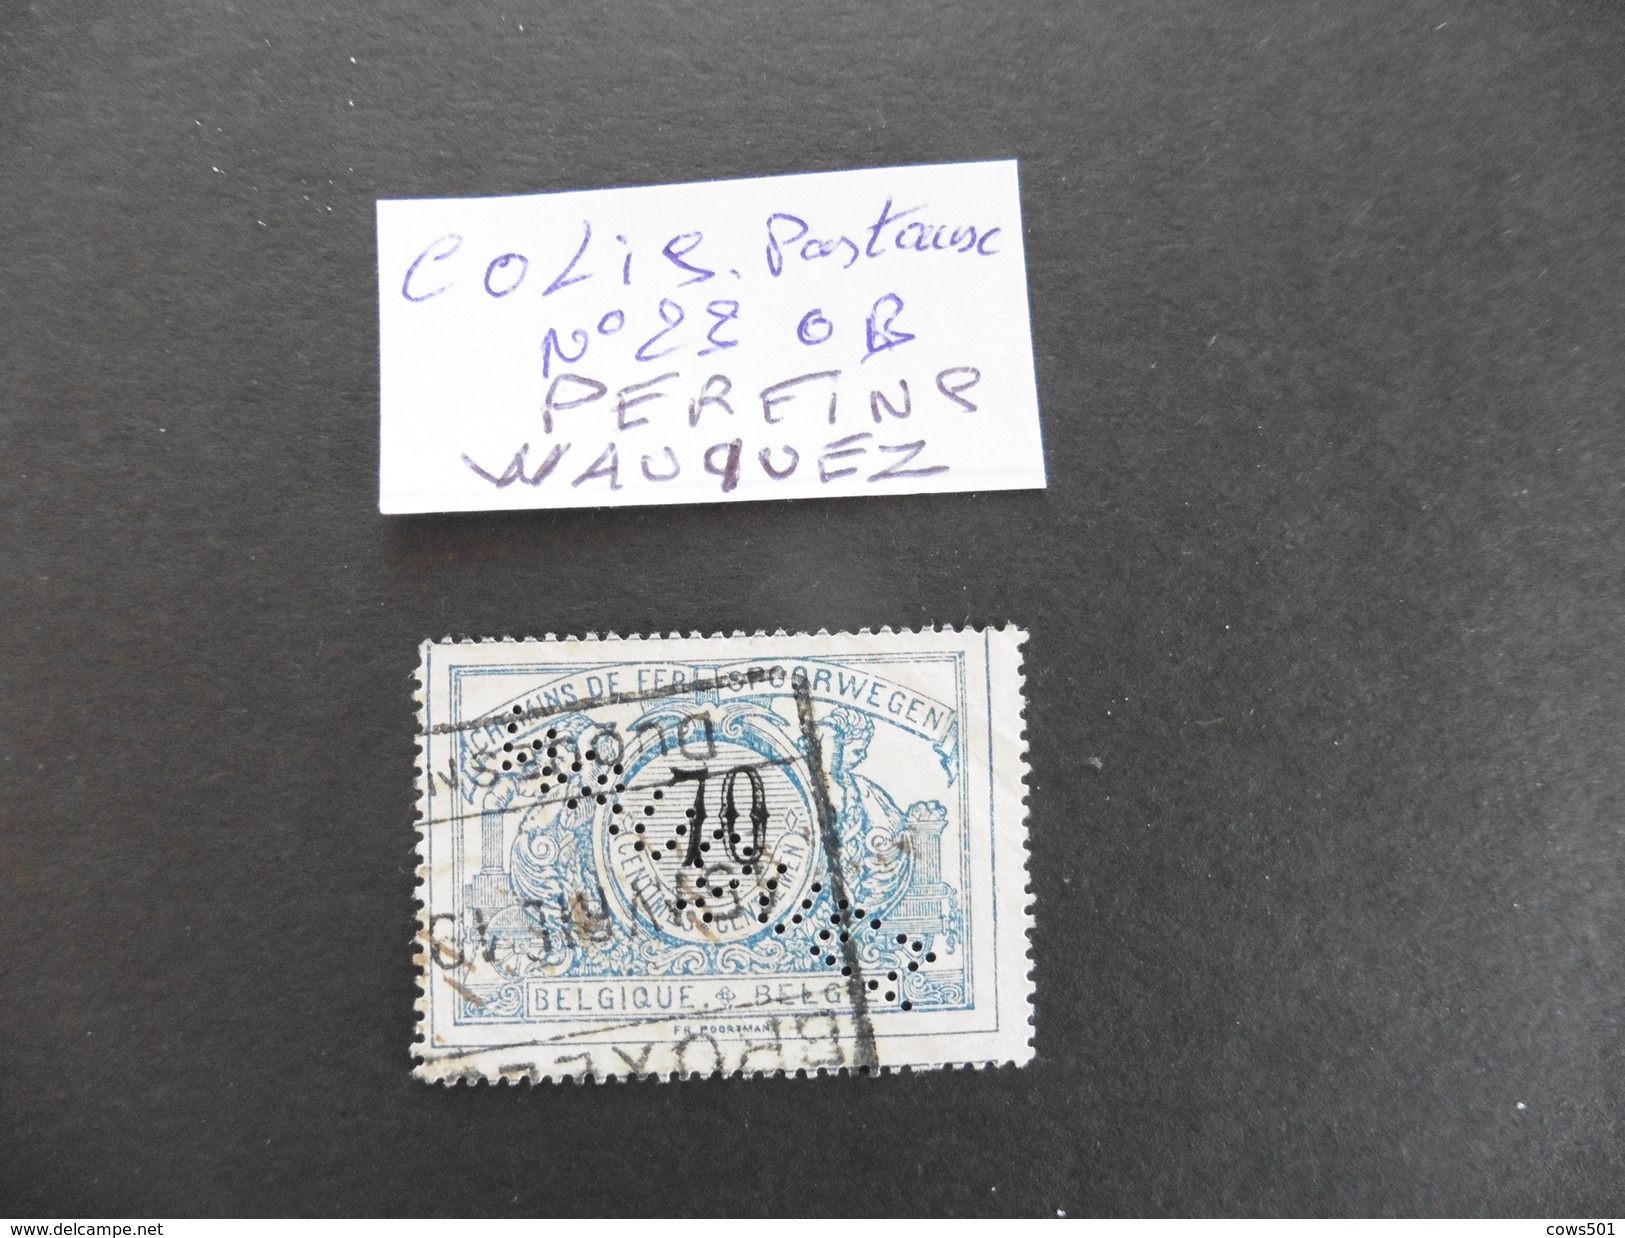 Belgique :Perfins :timbre Colis Postaux N°23  Perforé WAUQUEZ - Ohne Zuordnung